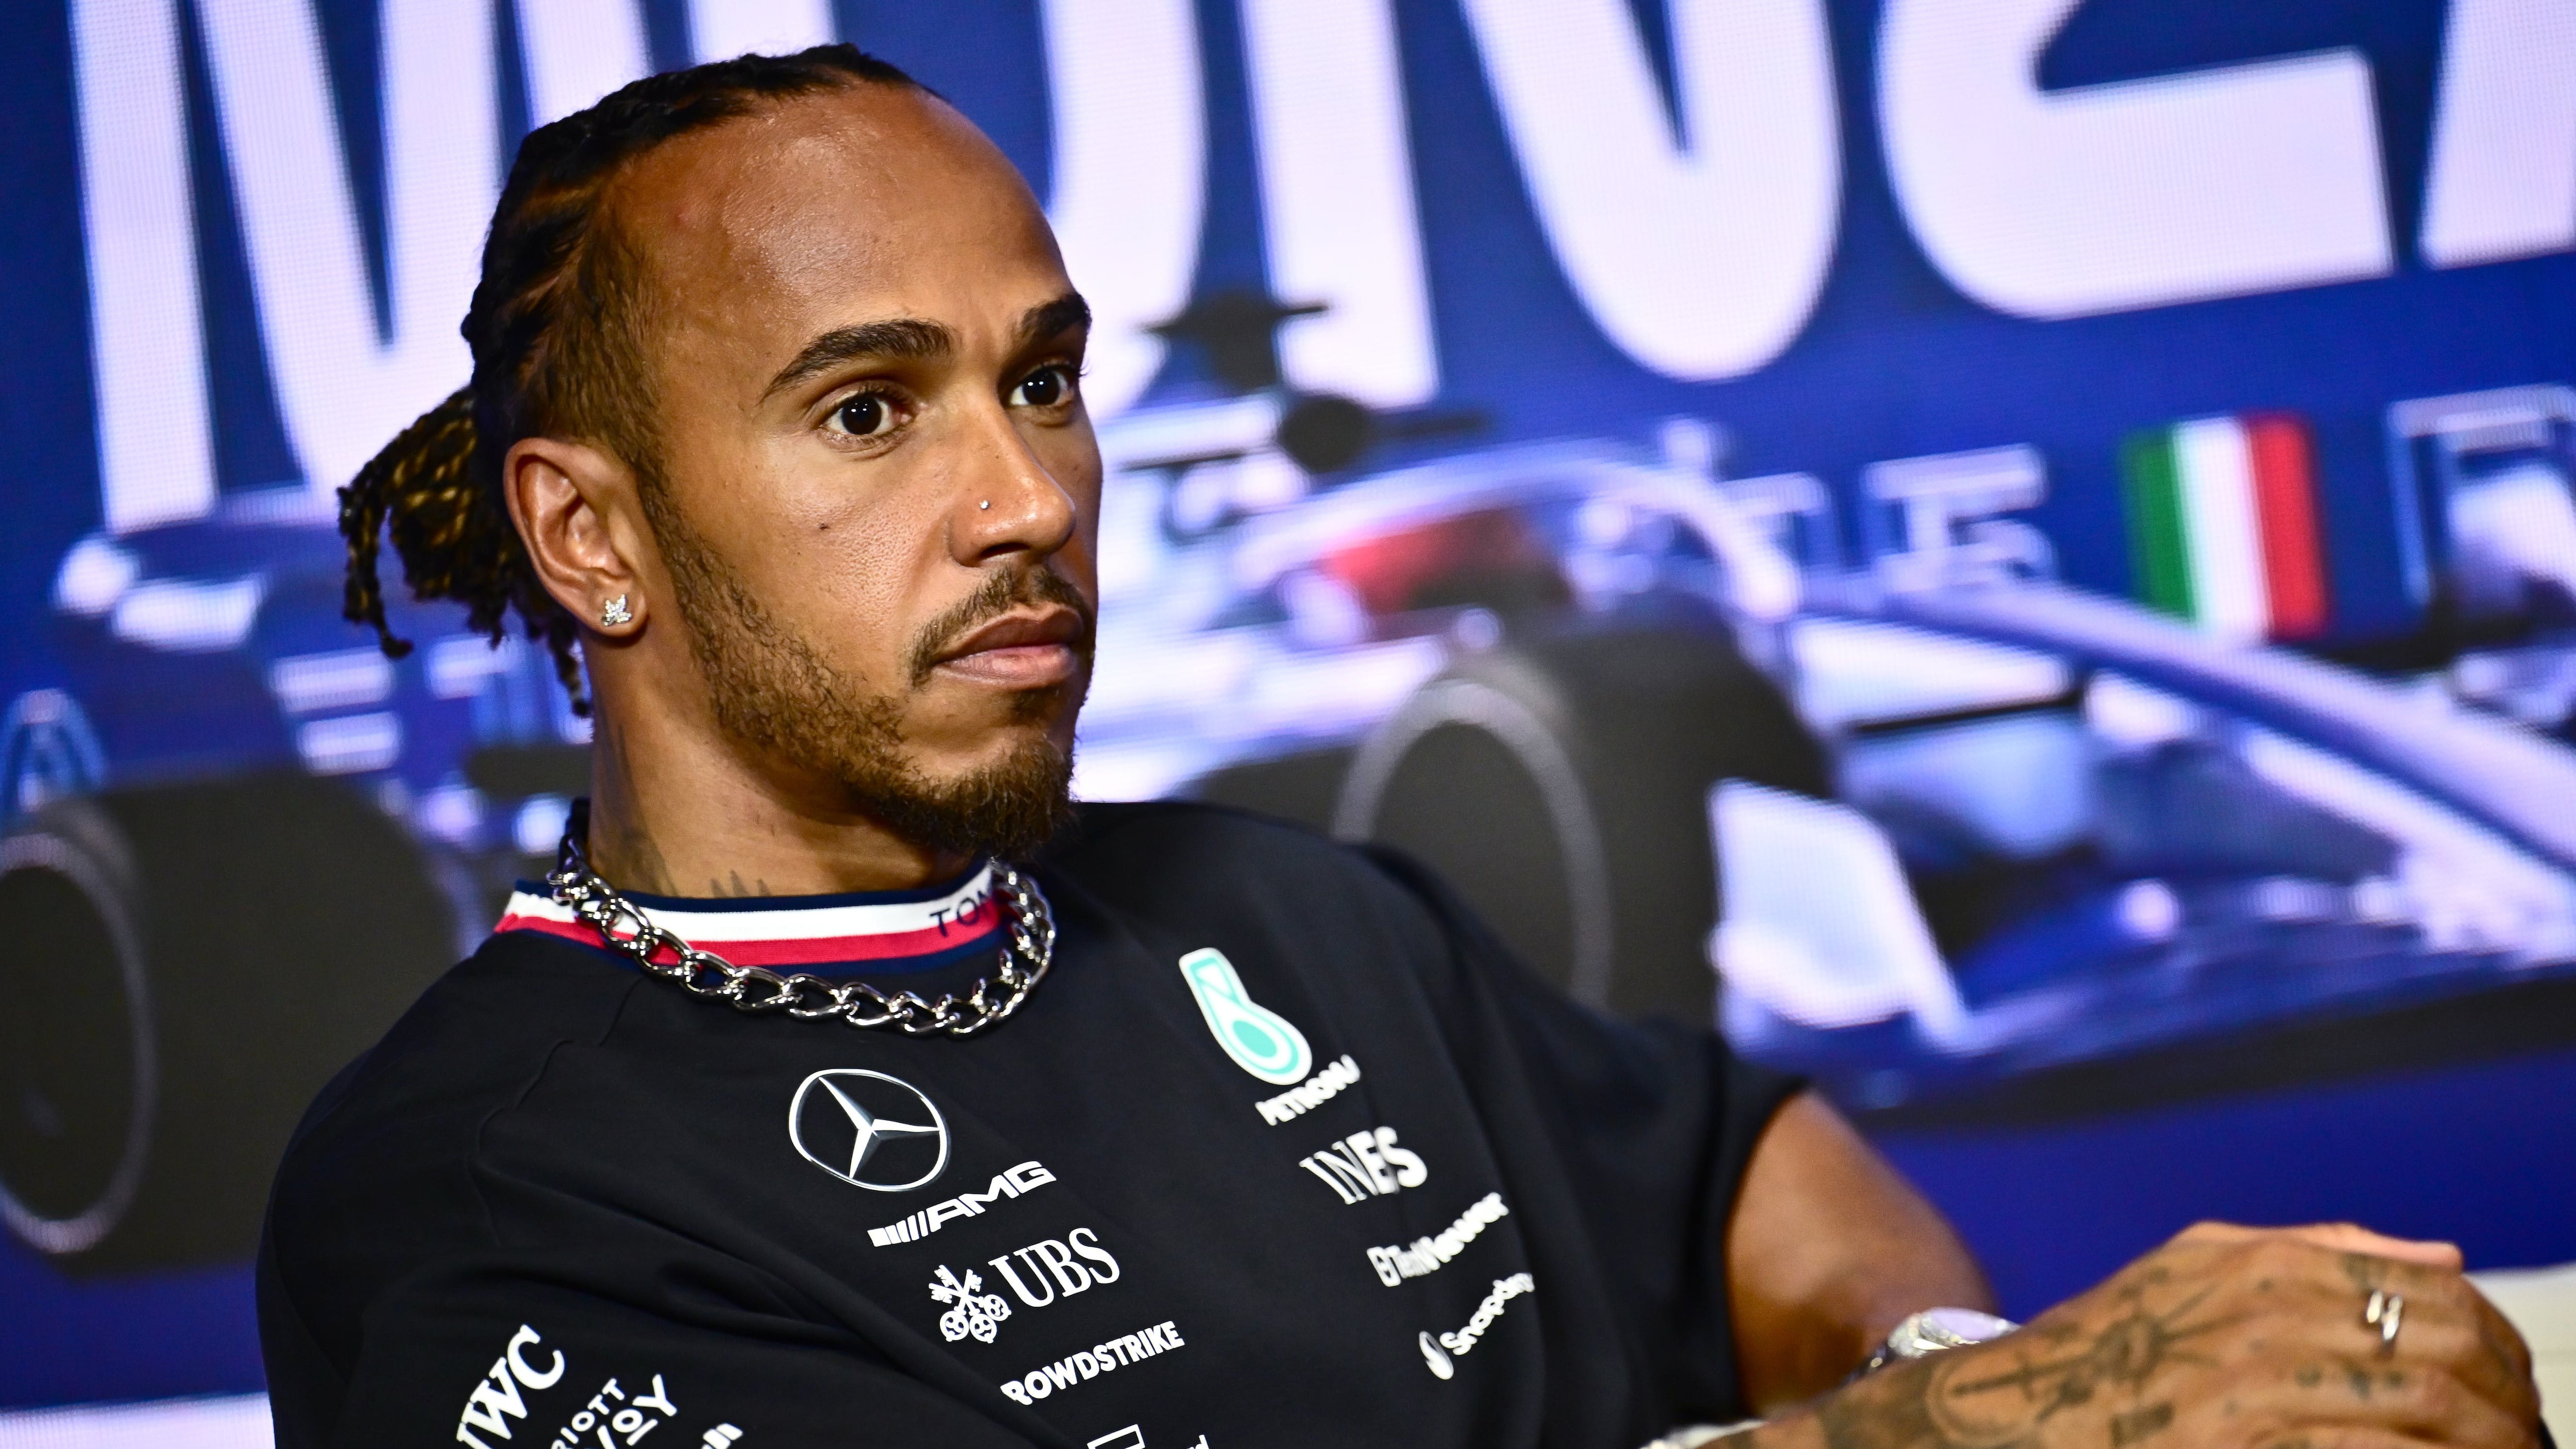 Hamilton buscará volver a la victoria en el autódromo de Monza. / Marco Bertorello/AFP